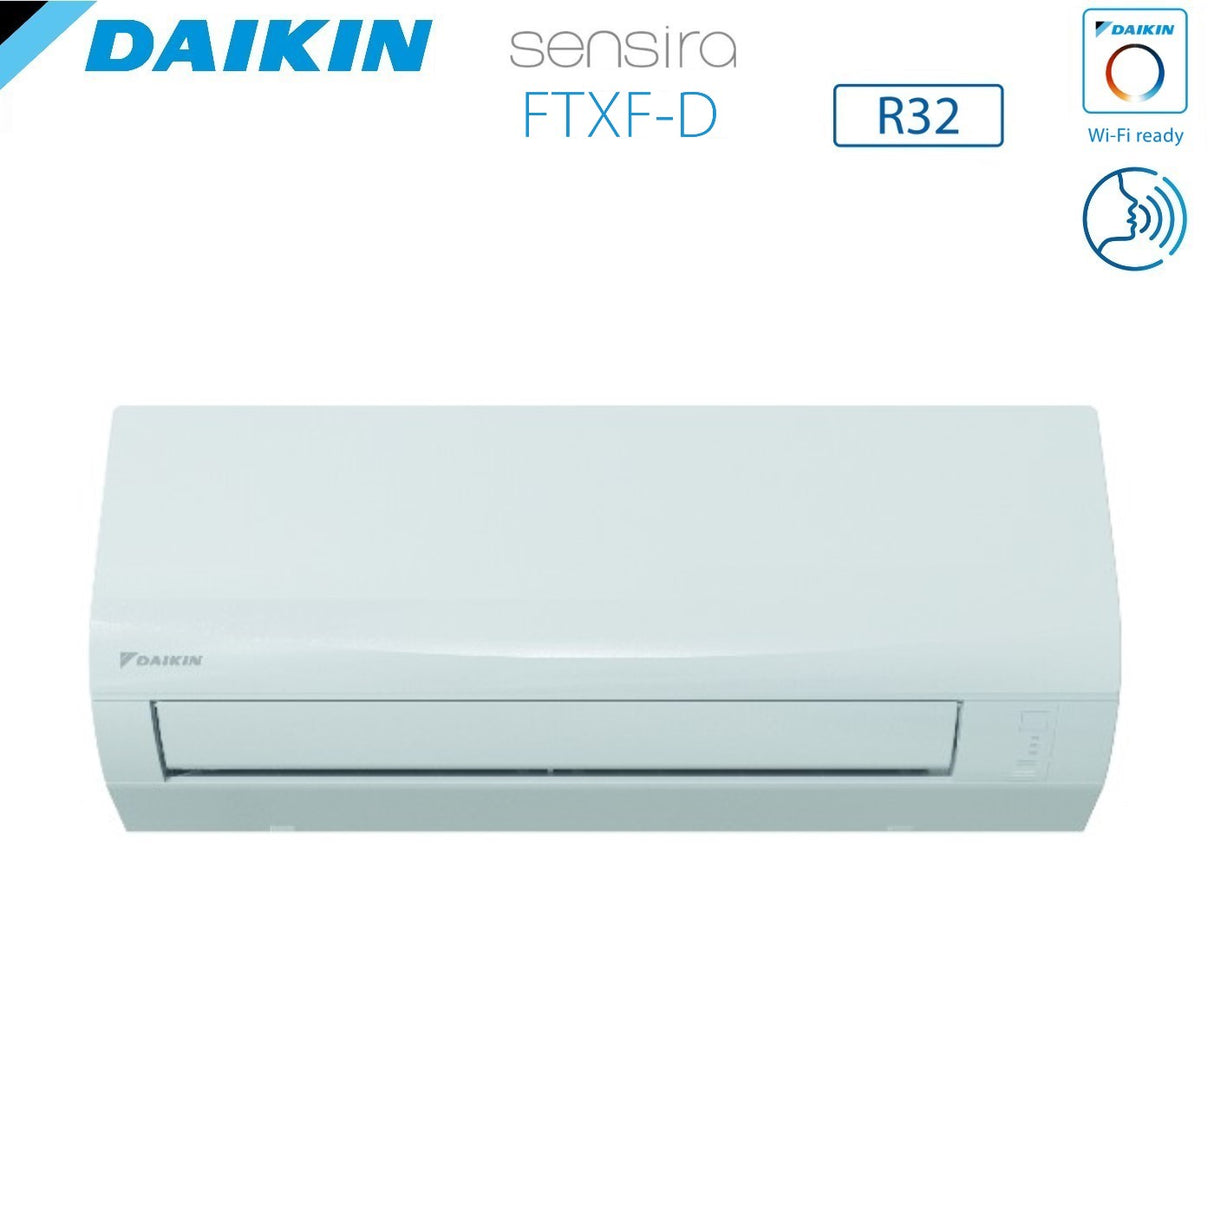 immagine-3-daikin-climatizzatore-condizionatore-daikin-inverter-serie-ecoplus-sensira-9000-btu-ftxf25cd-r-32-wi-fi-optional-classe-a-ean-4548848644537